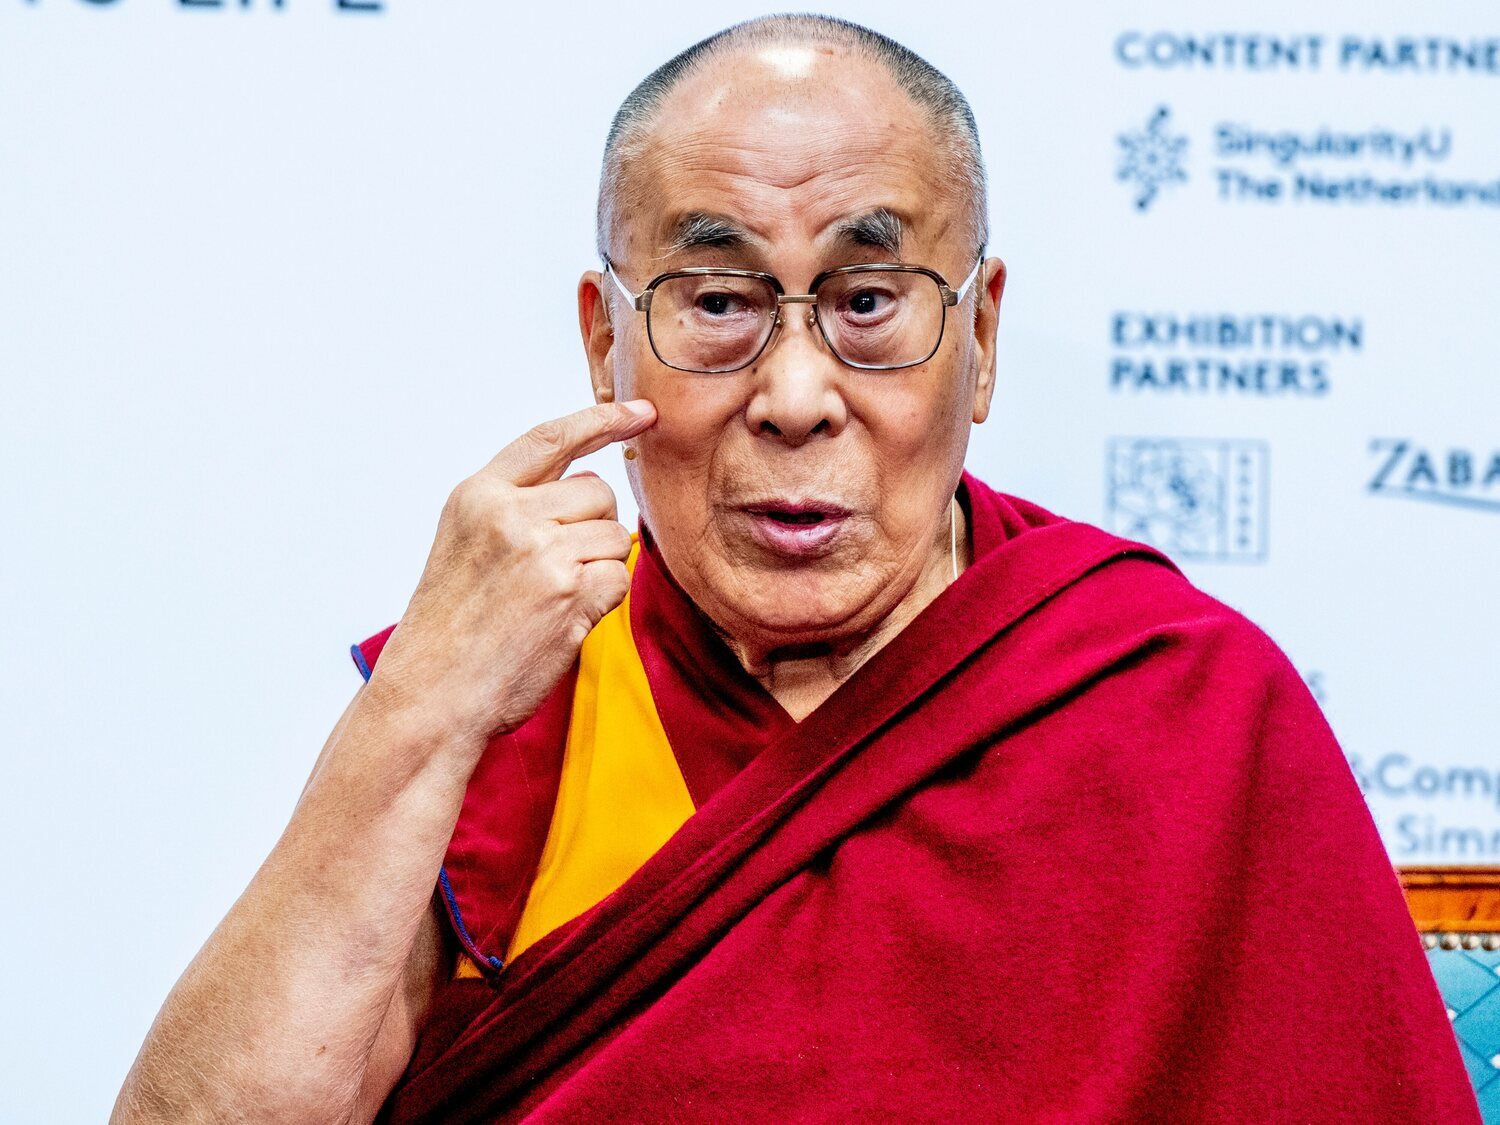 Polémica por el vídeo del Dalai Lama intentando besar a un niño